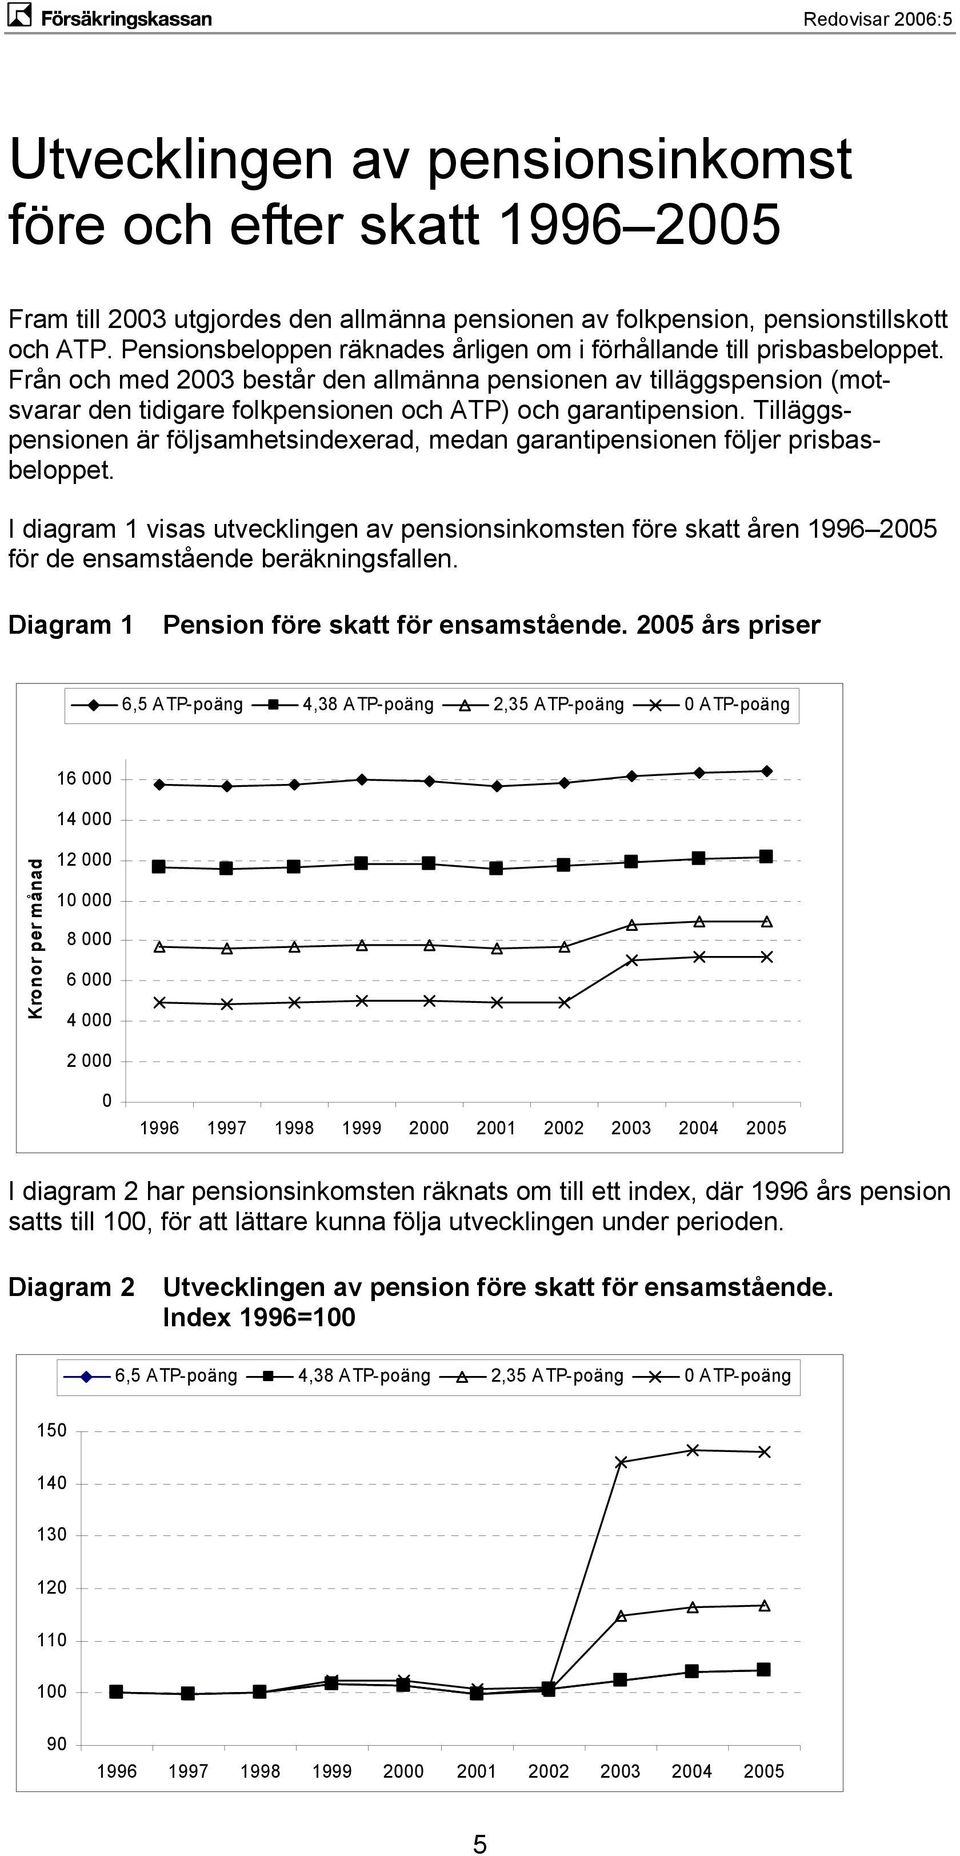 Från och med 2003 består den allmänna pensionen av tilläggspension (motsvarar den tidigare folkpensionen och ATP) och garantipension.